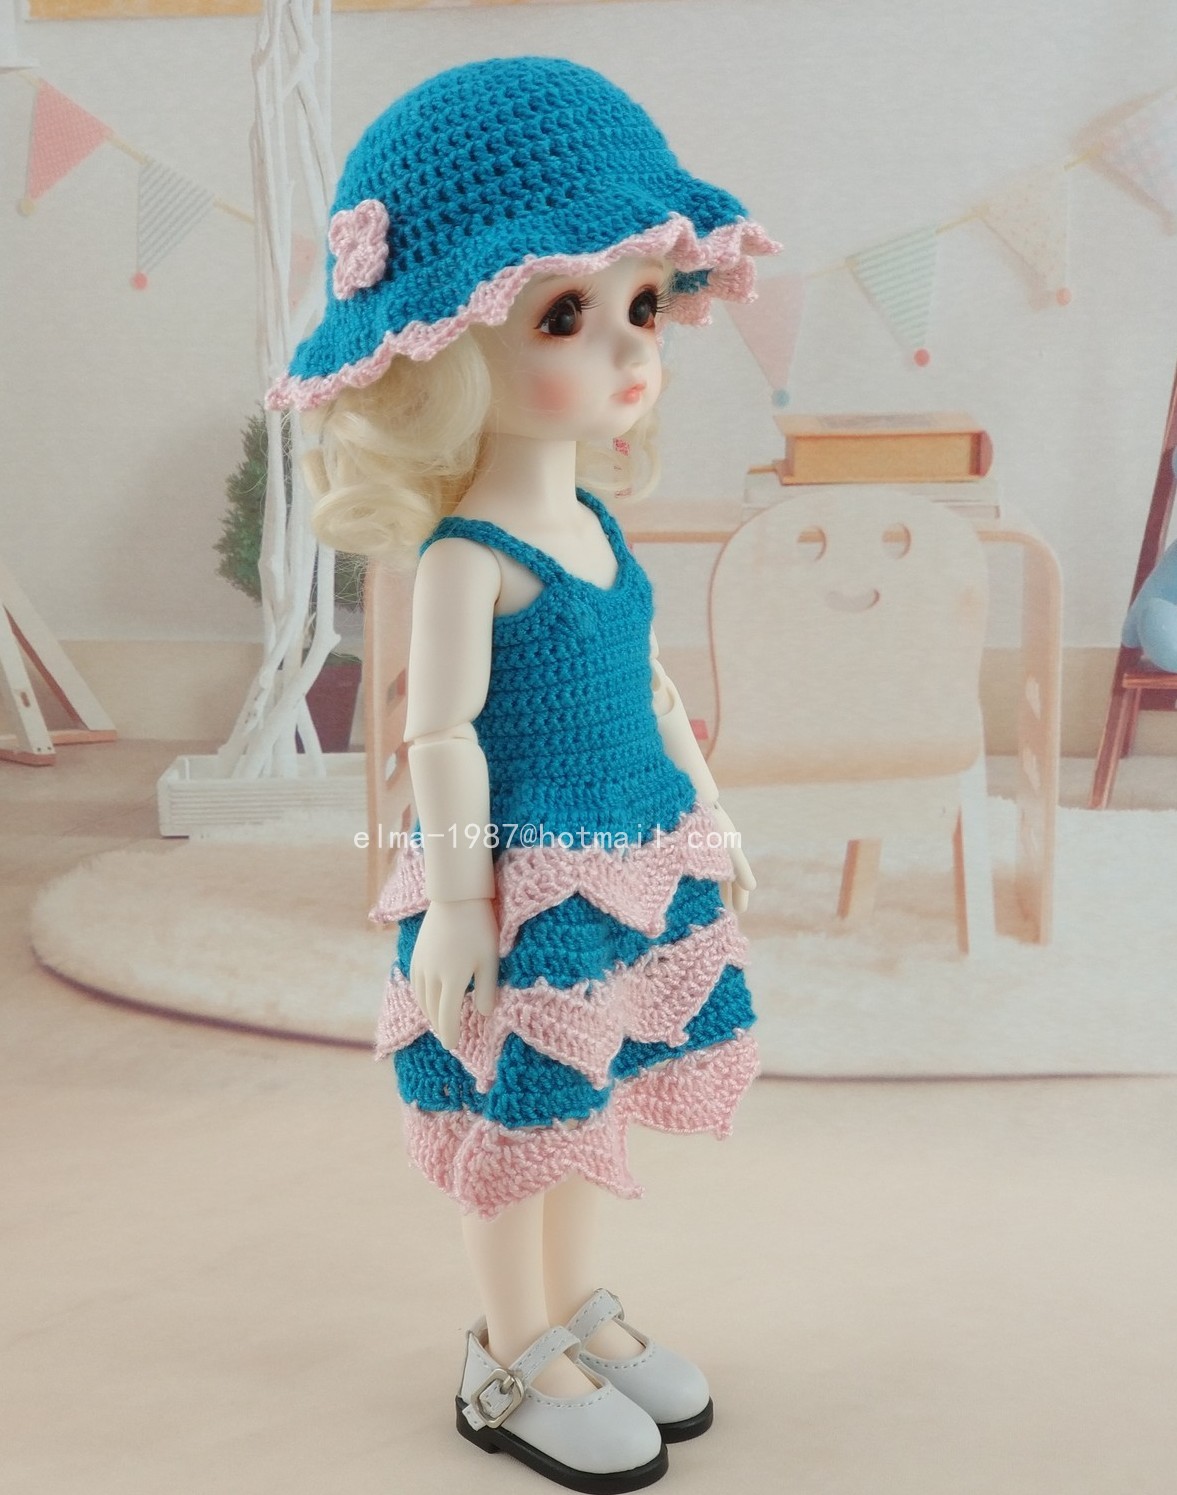 crochet-blue-dress-for-bjd-8.jpg